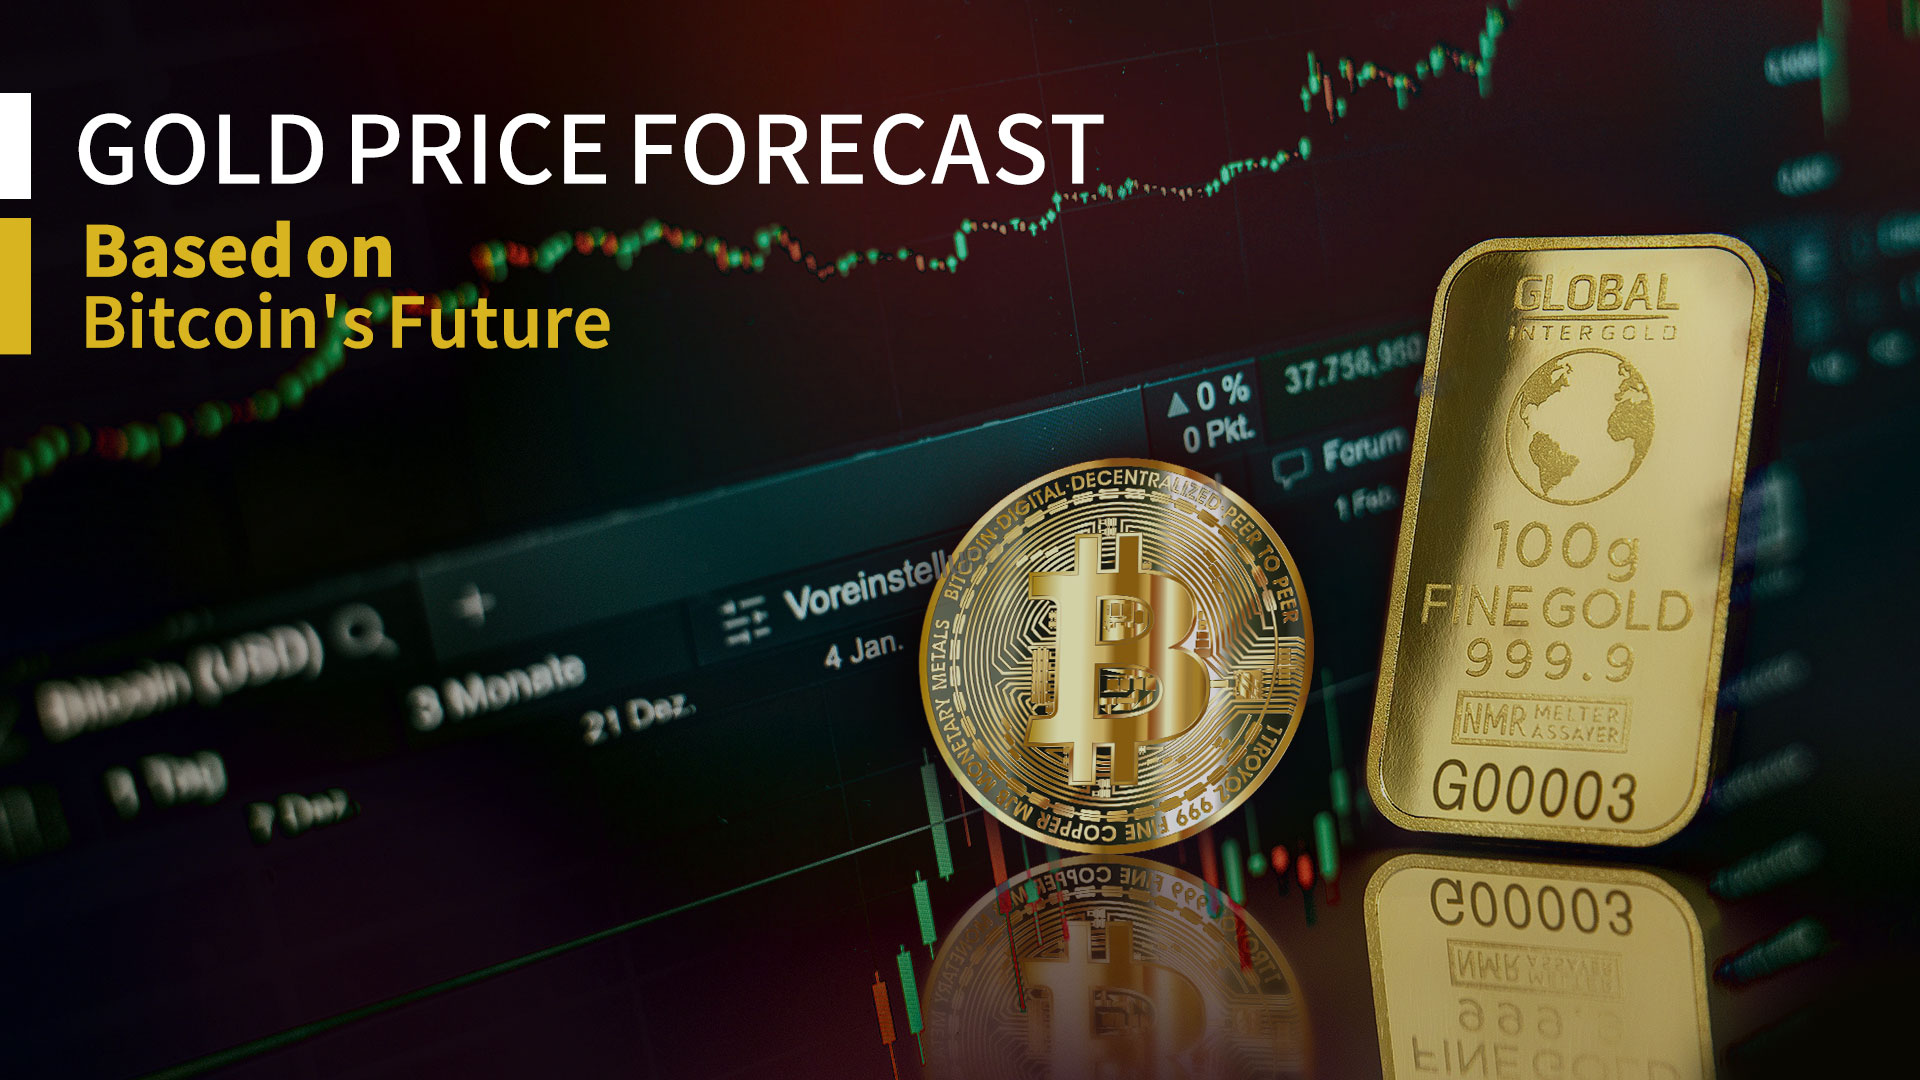 Goudprijsvoorspelling gebaseerd op Bitcoin’s toekomst